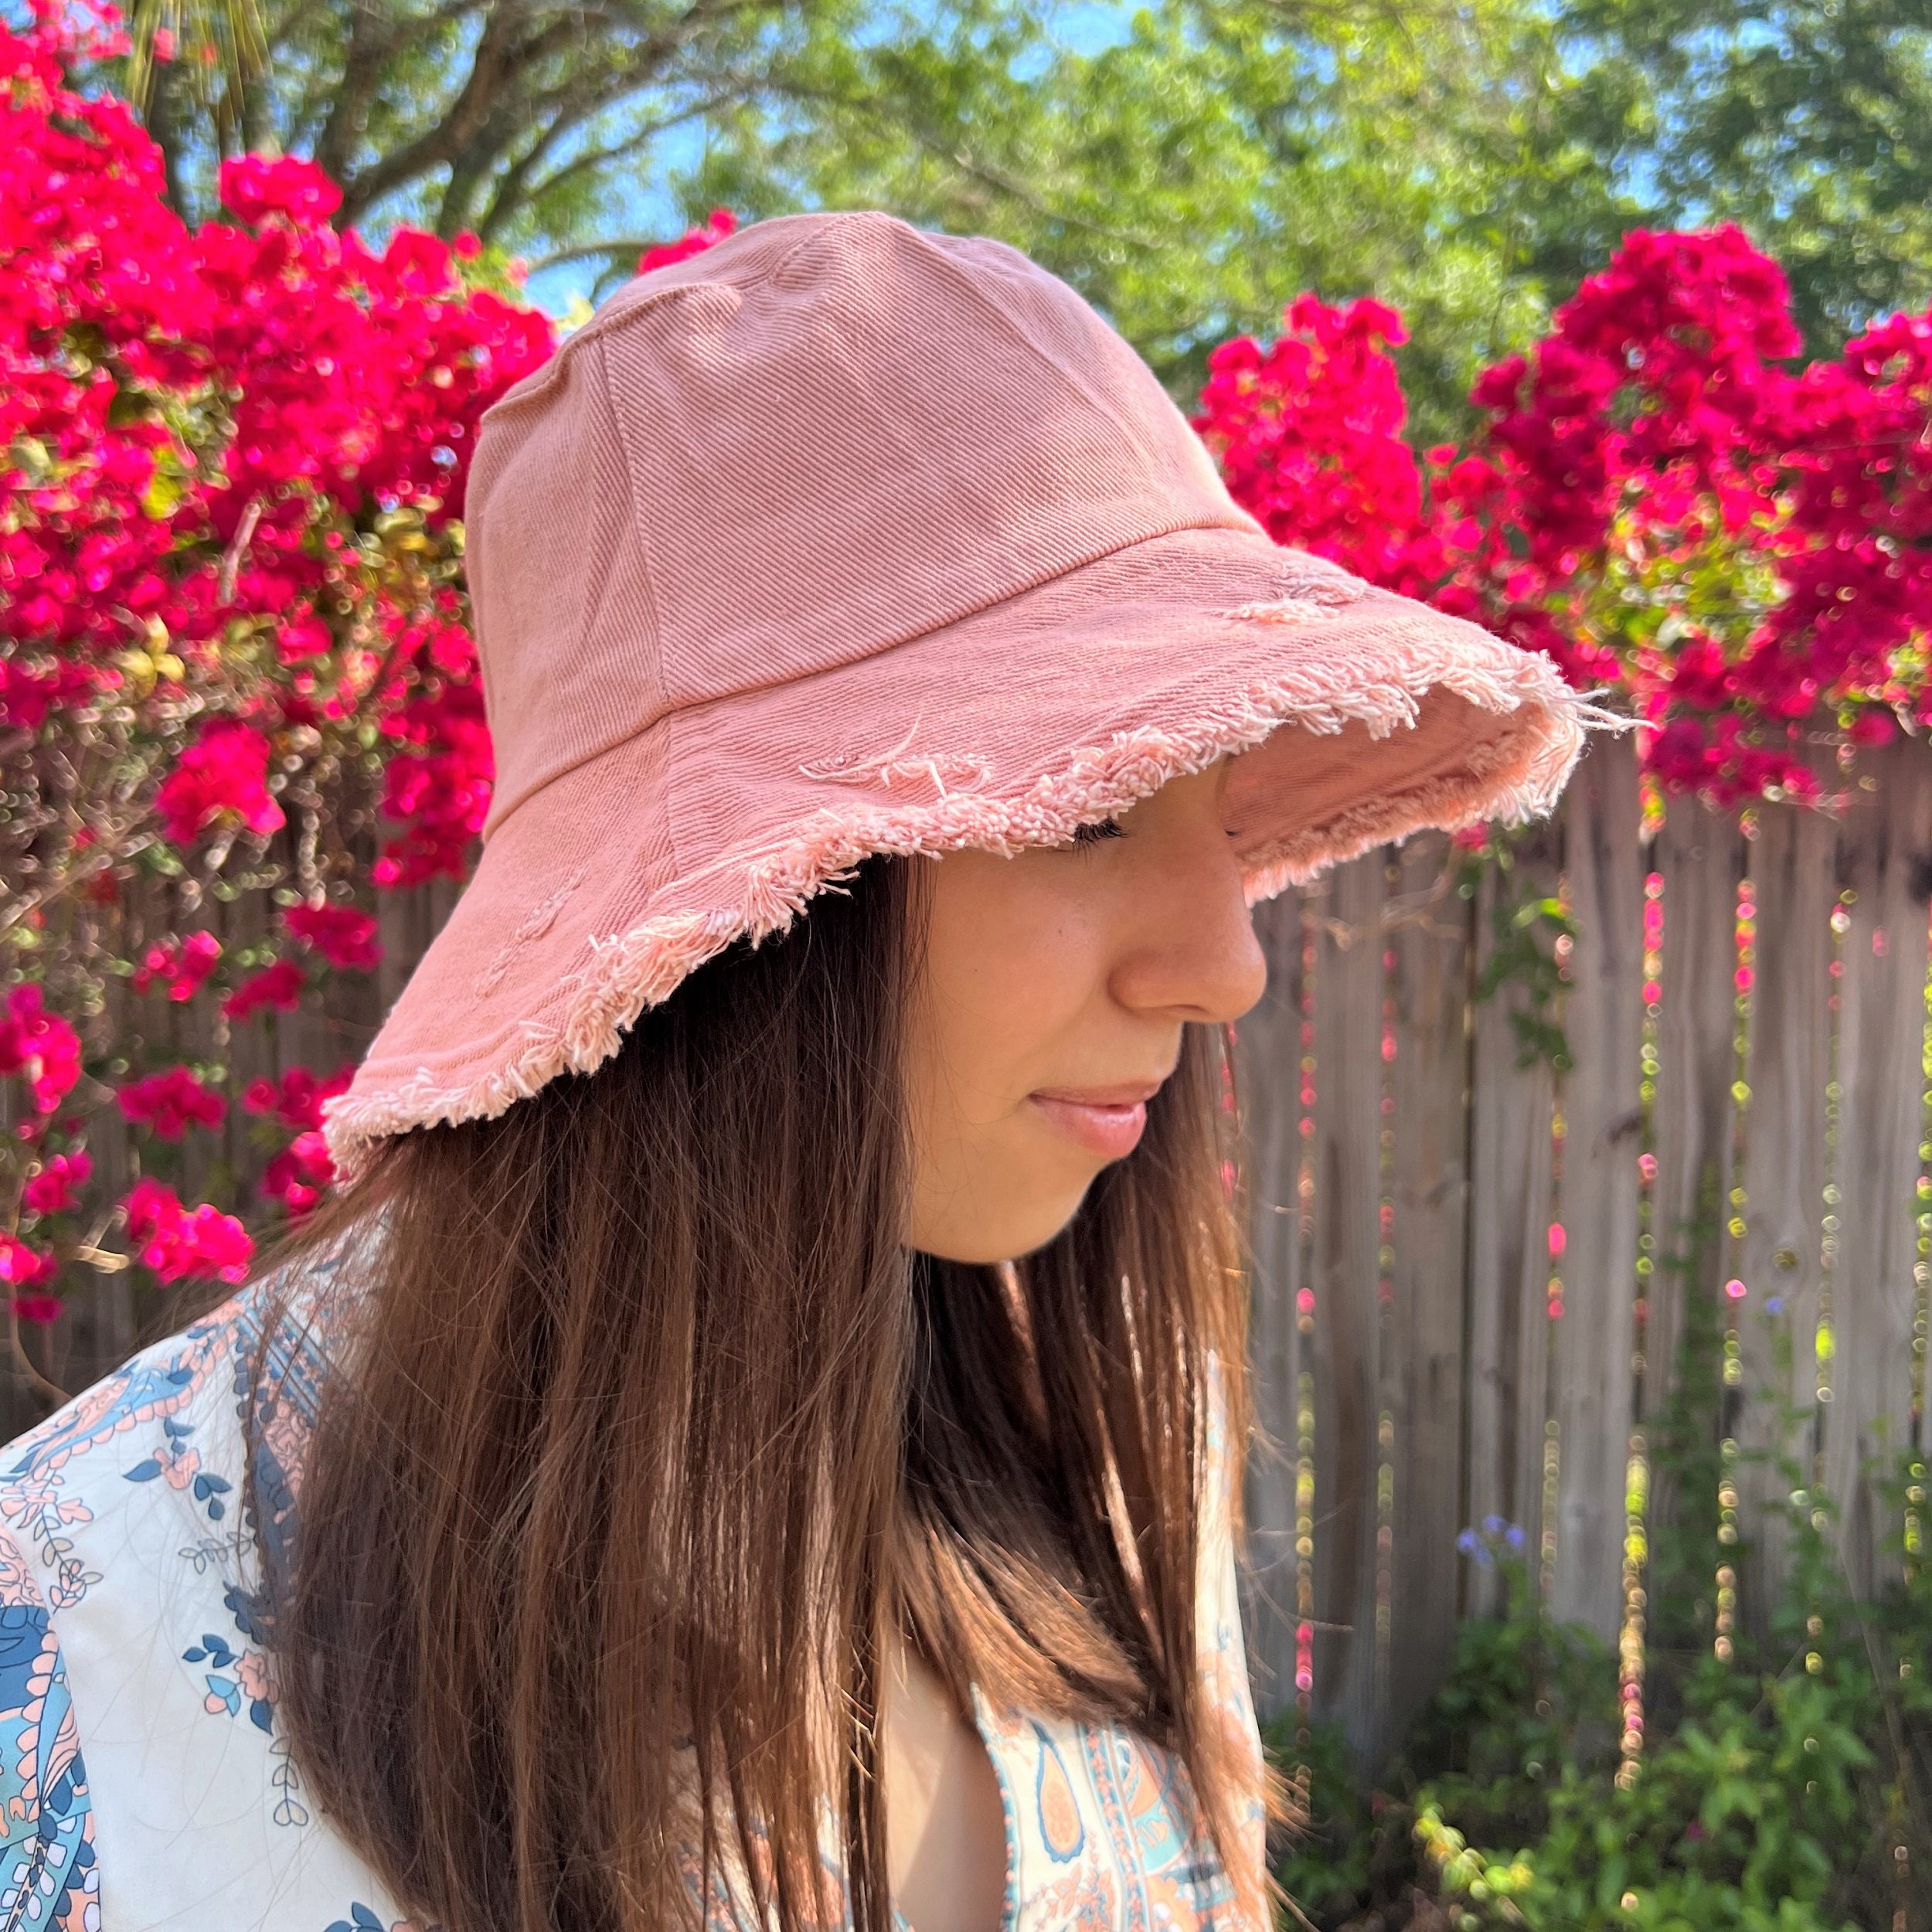 Red Sun Hat Frayed Wide Brim Bucket Hat Summer Hat Women Beach 100% Cotton  Hat Brimmed Sunhat Elegant Vacation Honeymoon Gift for Her 